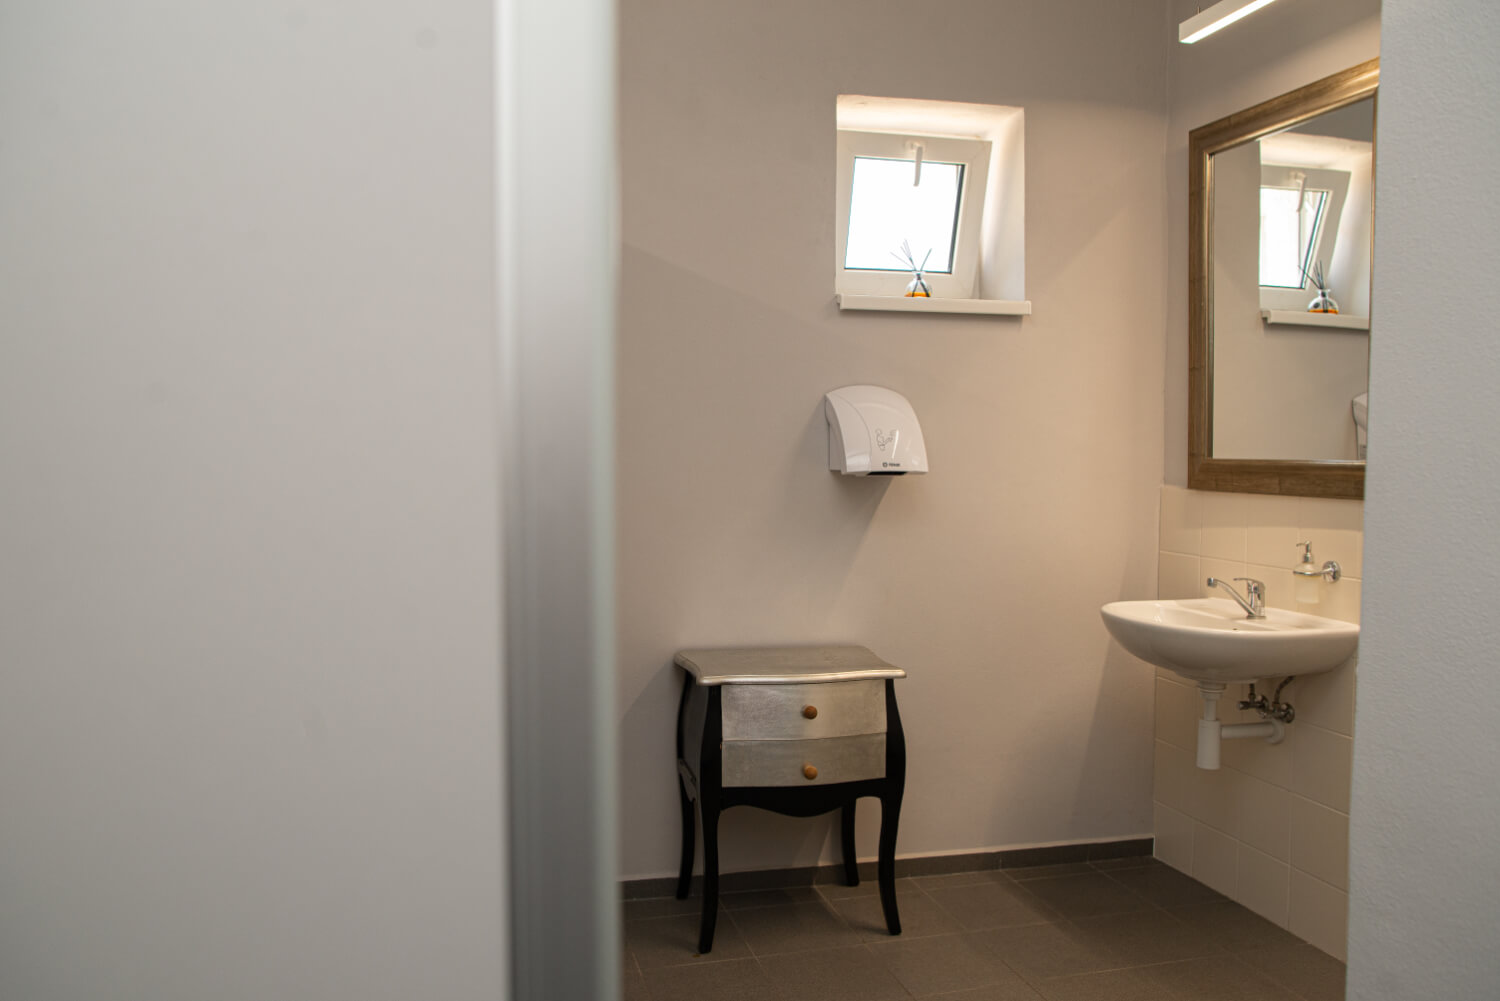 Zreakonstruované toalety v budově Moravolen vlastněné společností OSAPO reality